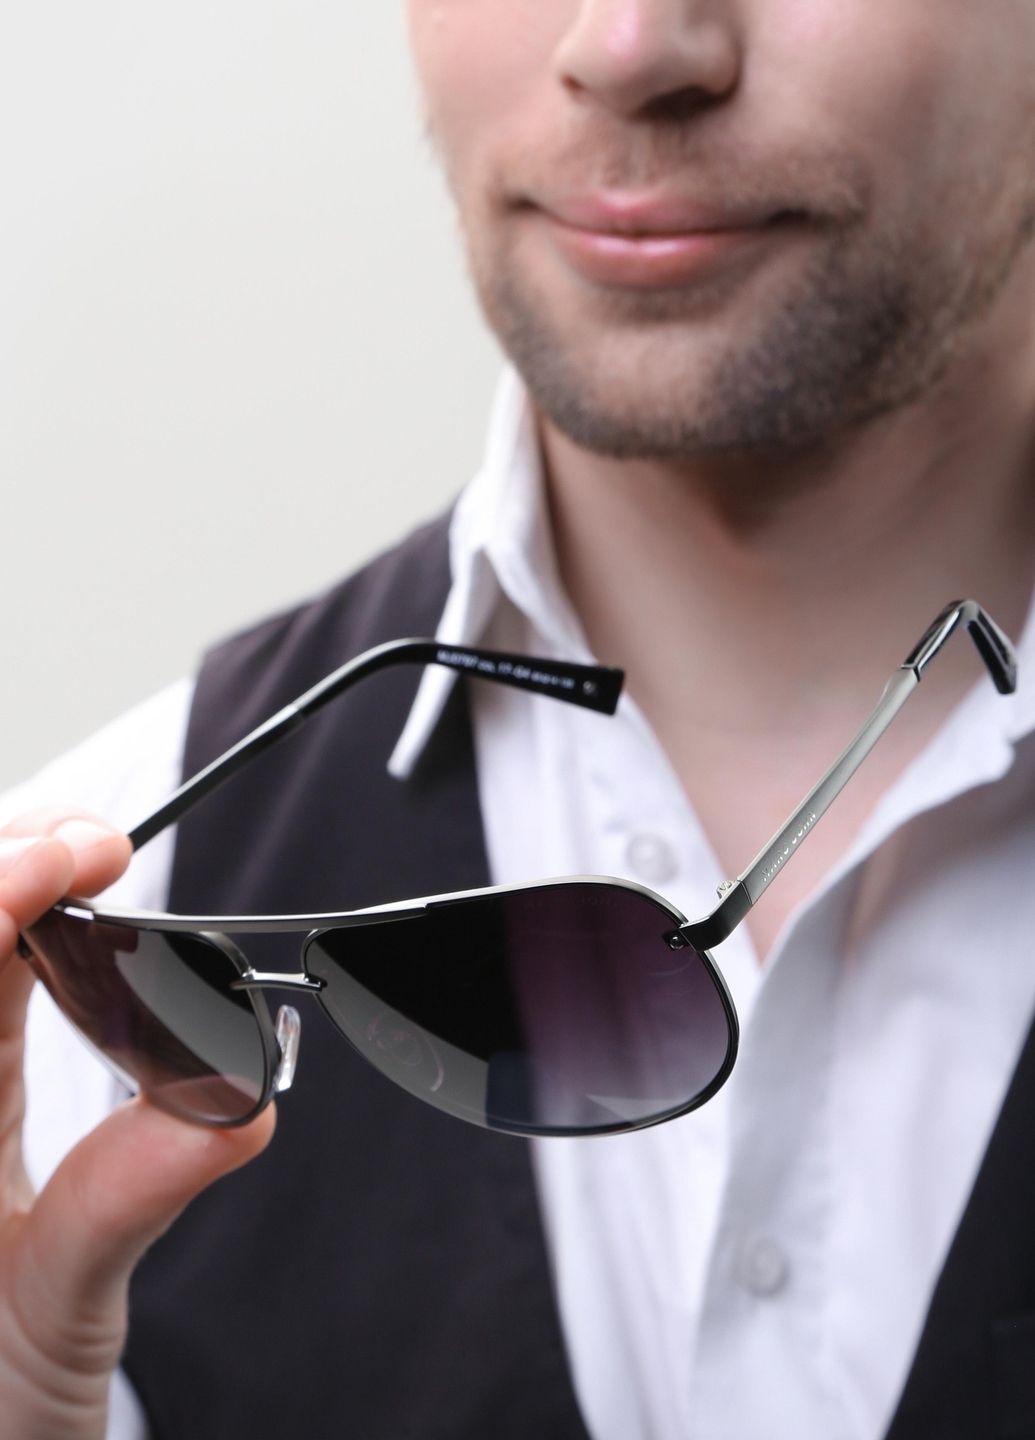 Купить Мужские солнцезащитные очки Marc John с поляризацией MJ0797 190035 - Черный в интернет-магазине